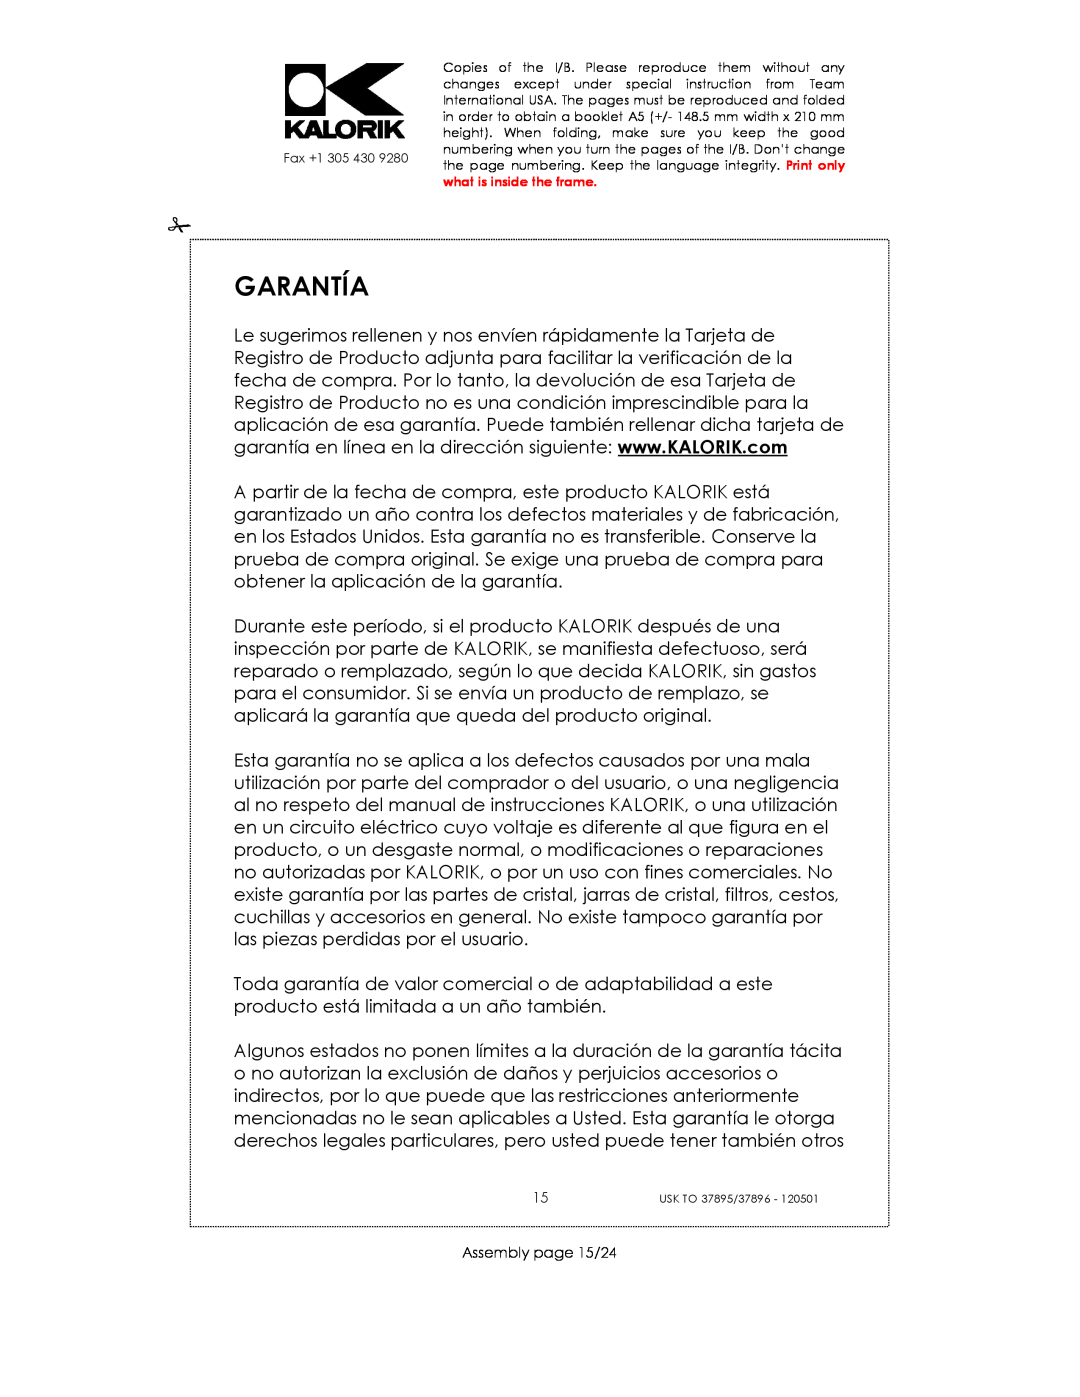 Kalorik USK TO 37895, USK TO 37896 manual Garantía, Assembly page 15/24 